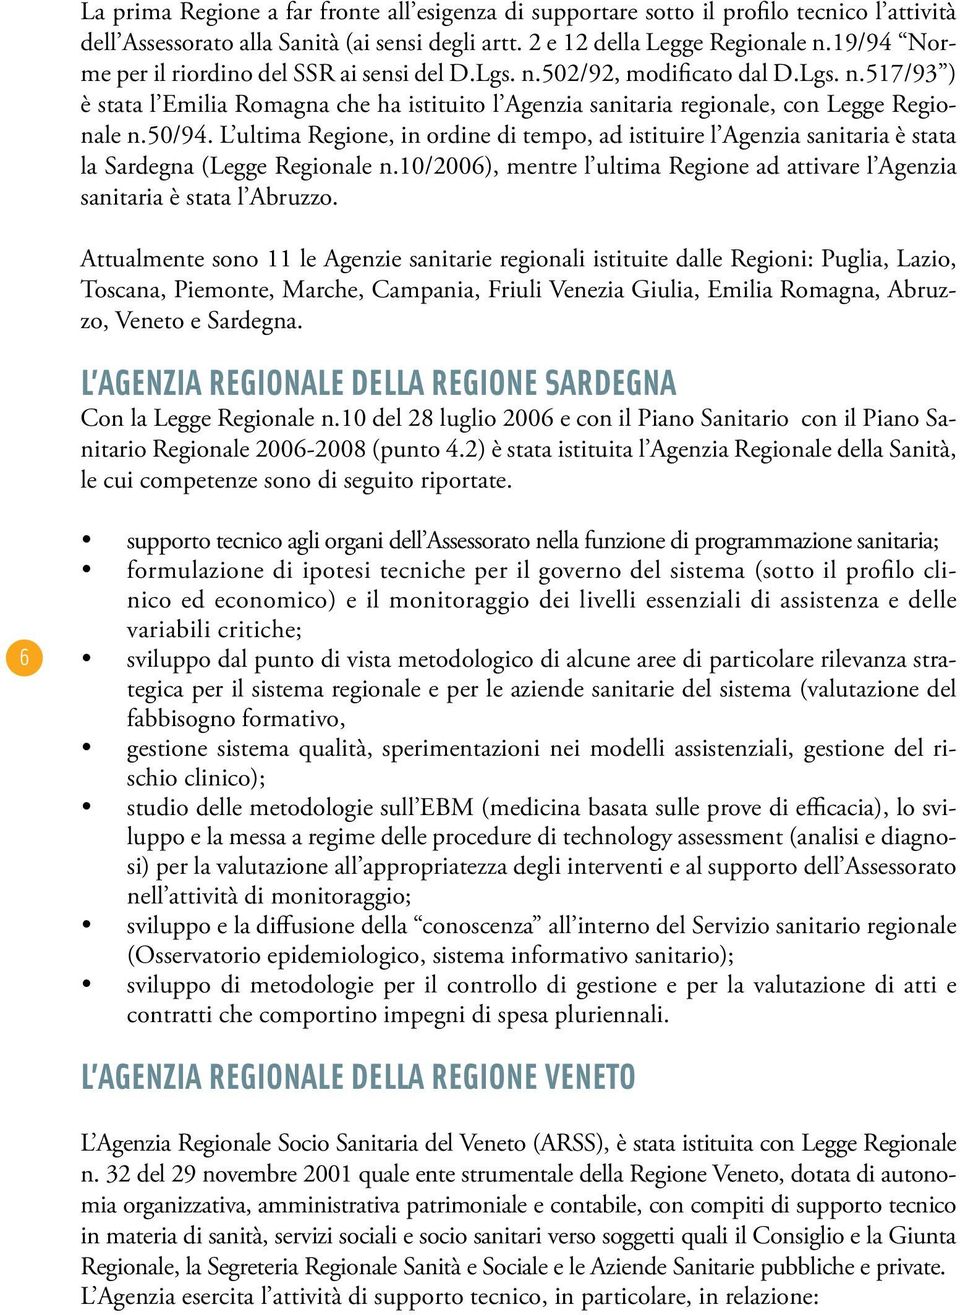 L ultima Regione, in ordine di tempo, ad istituire l Agenzia sanitaria è stata la Sardegna (Legge Regionale n.10/2006), mentre l ultima Regione ad attivare l Agenzia sanitaria è stata l Abruzzo.